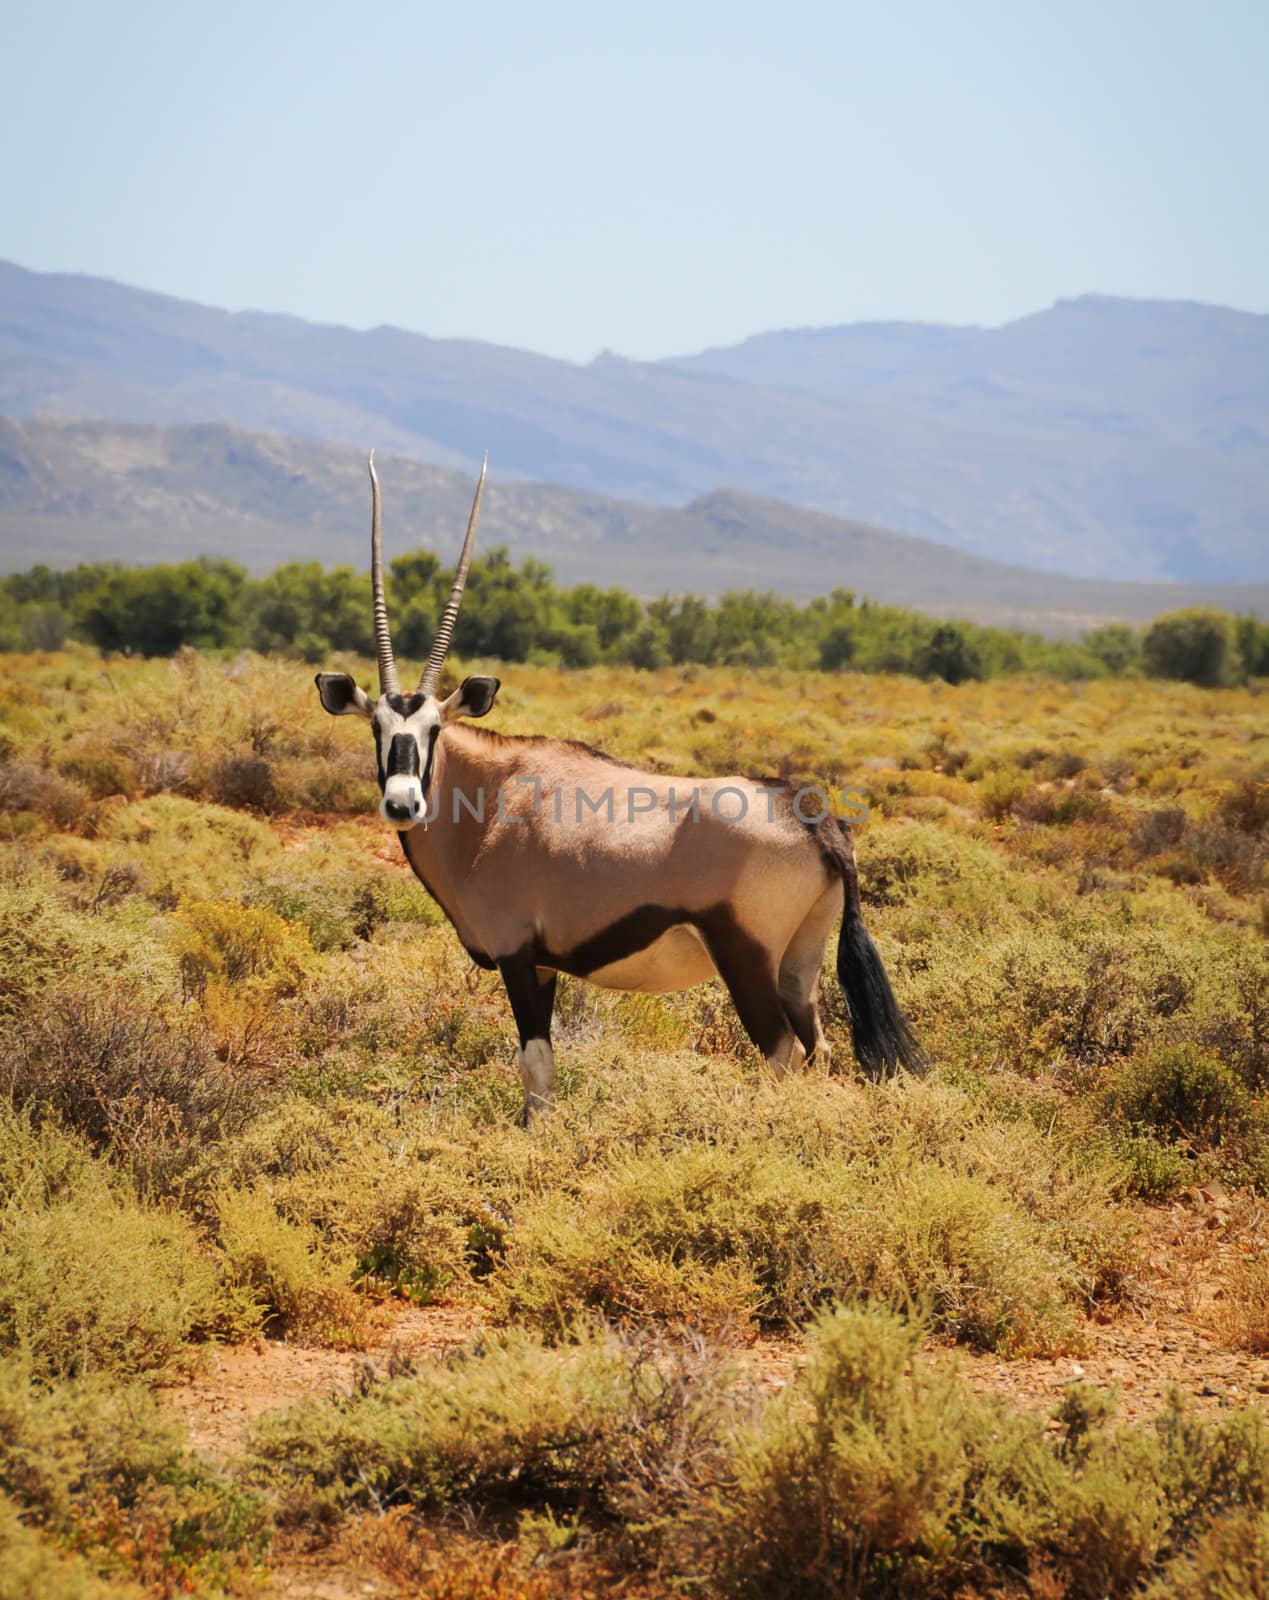 Gemsbok or gemsbuck (Oryx gazella) is a large antelope at south Africa bush